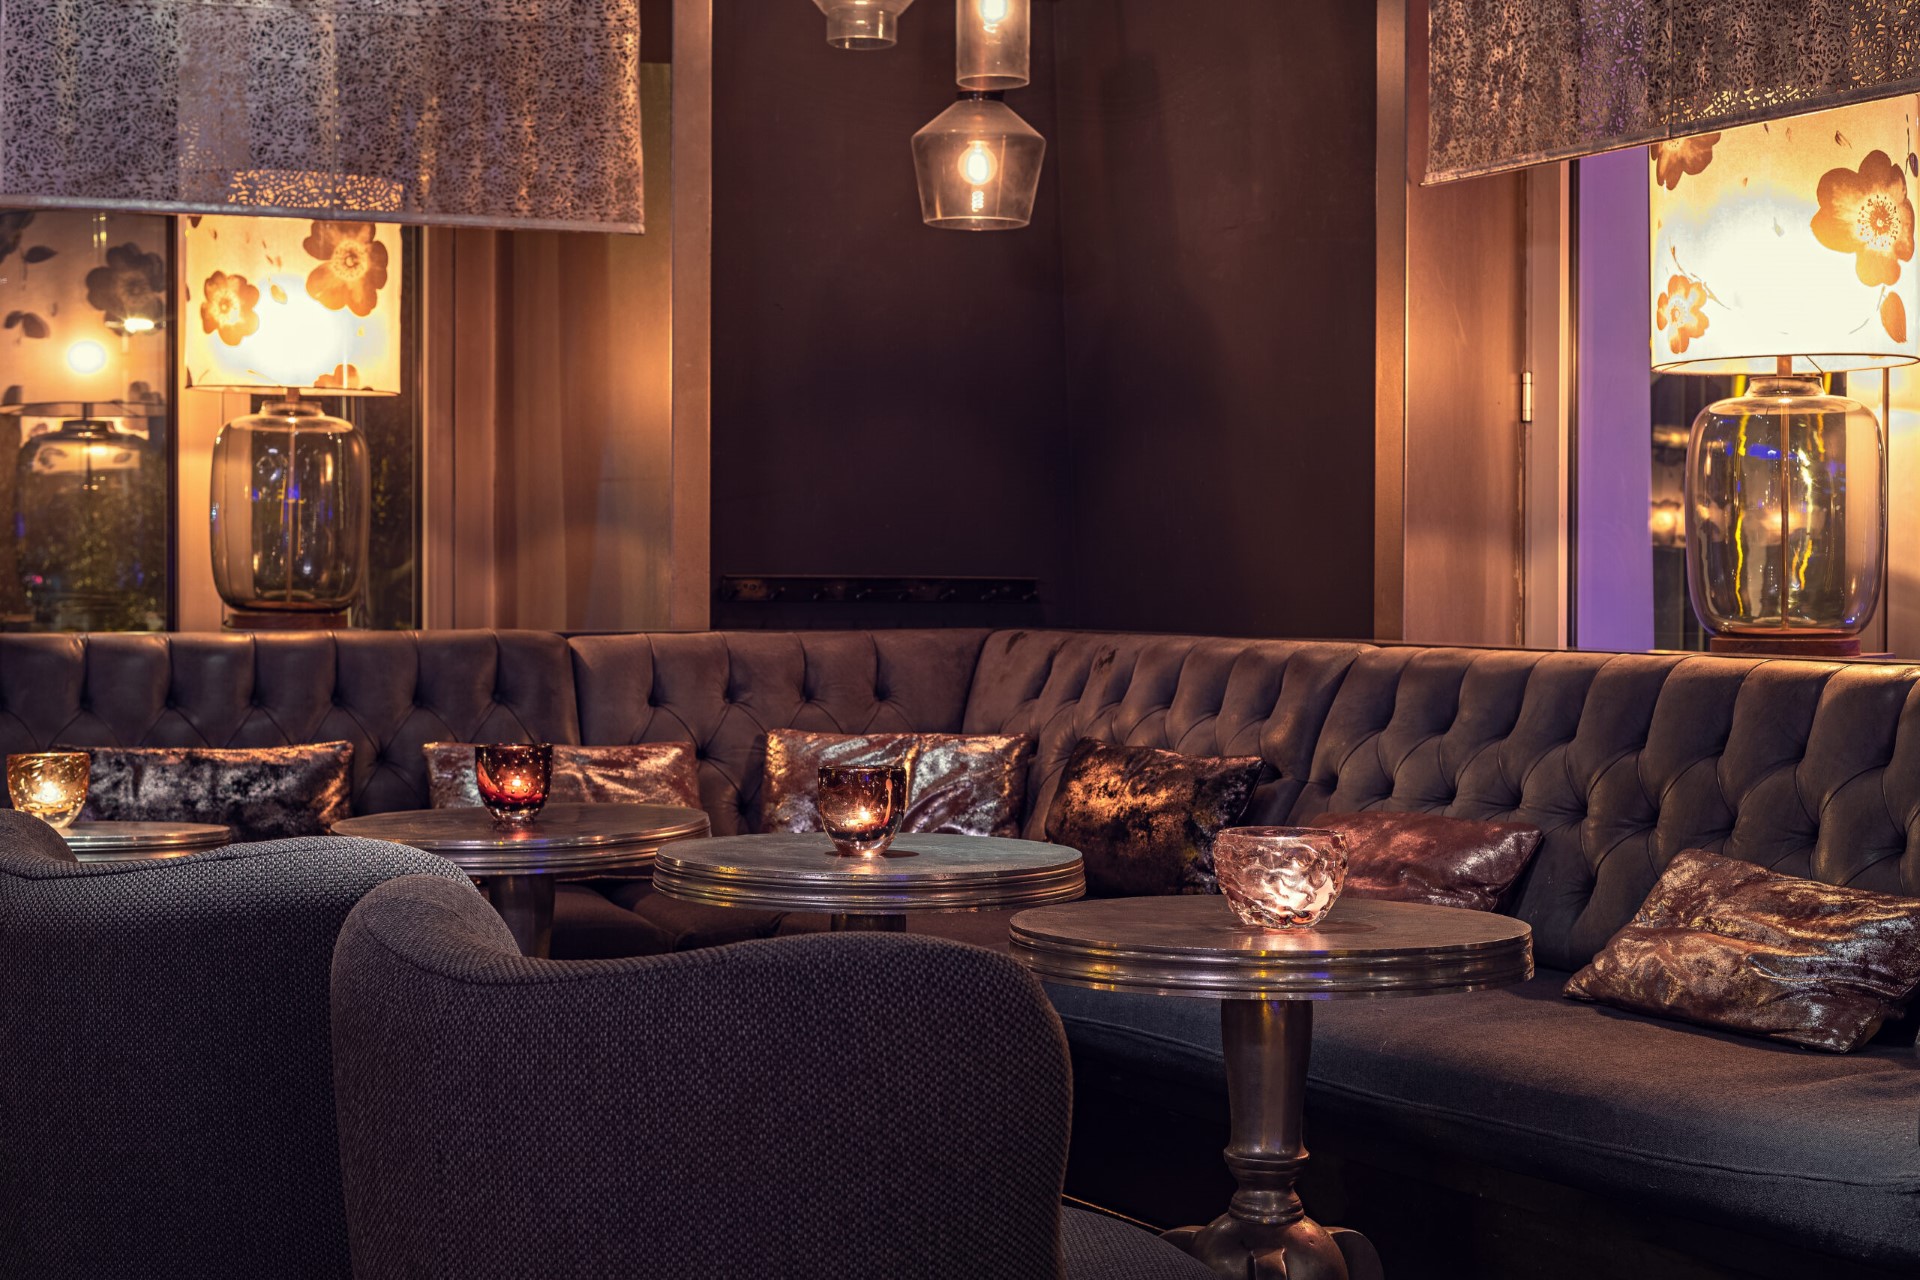 die Lounge des Restaurants Meerbar in Düsseldorf, gemütliche Sitzecke mit Tischen und Kissen